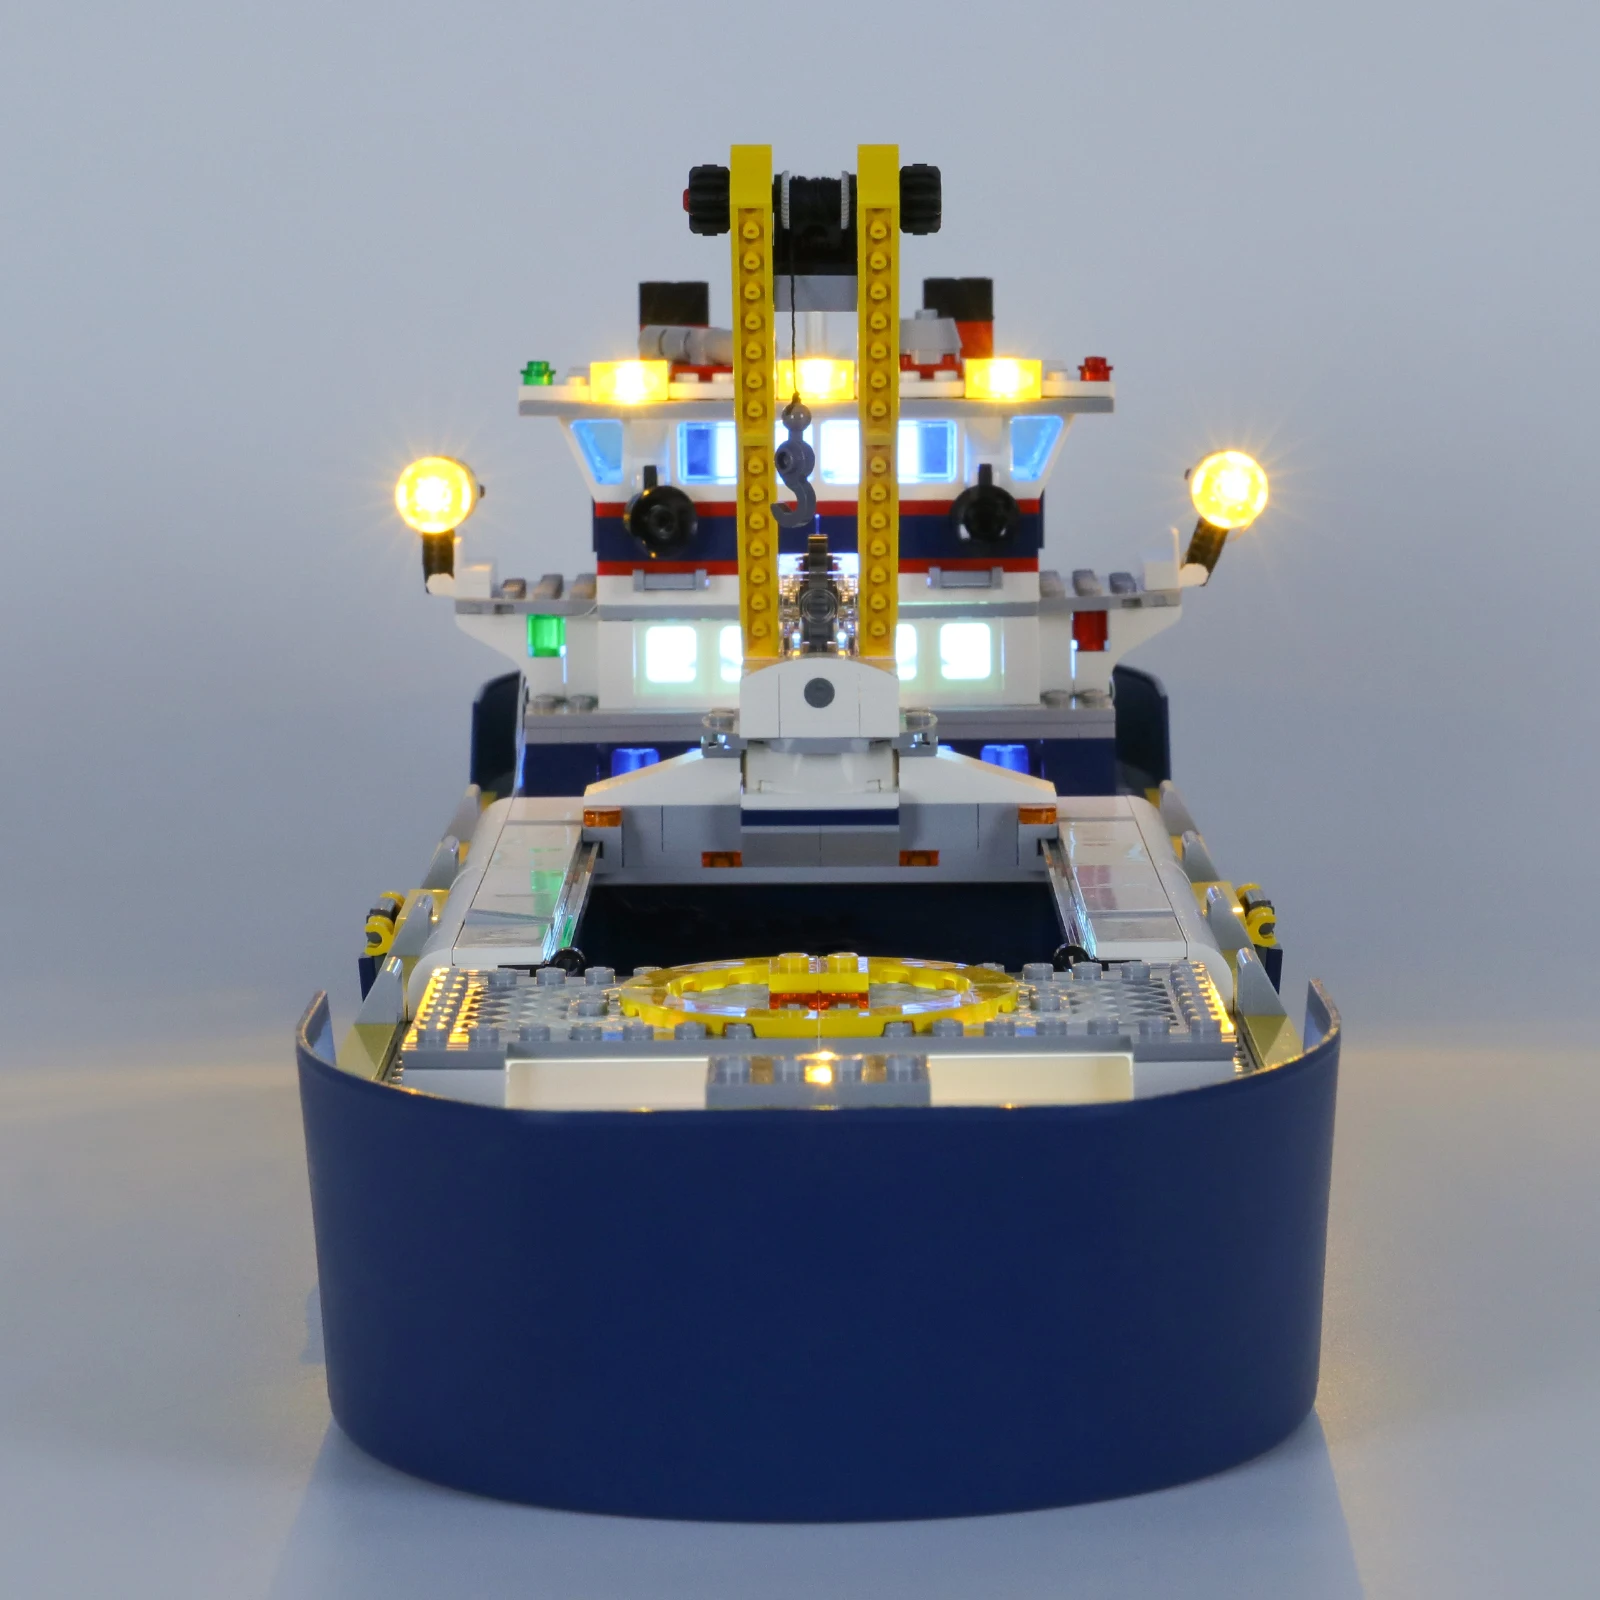 Komplet led žarulje SuSenGo za океанографического broda 60266, (model nije uključena) Slika 5